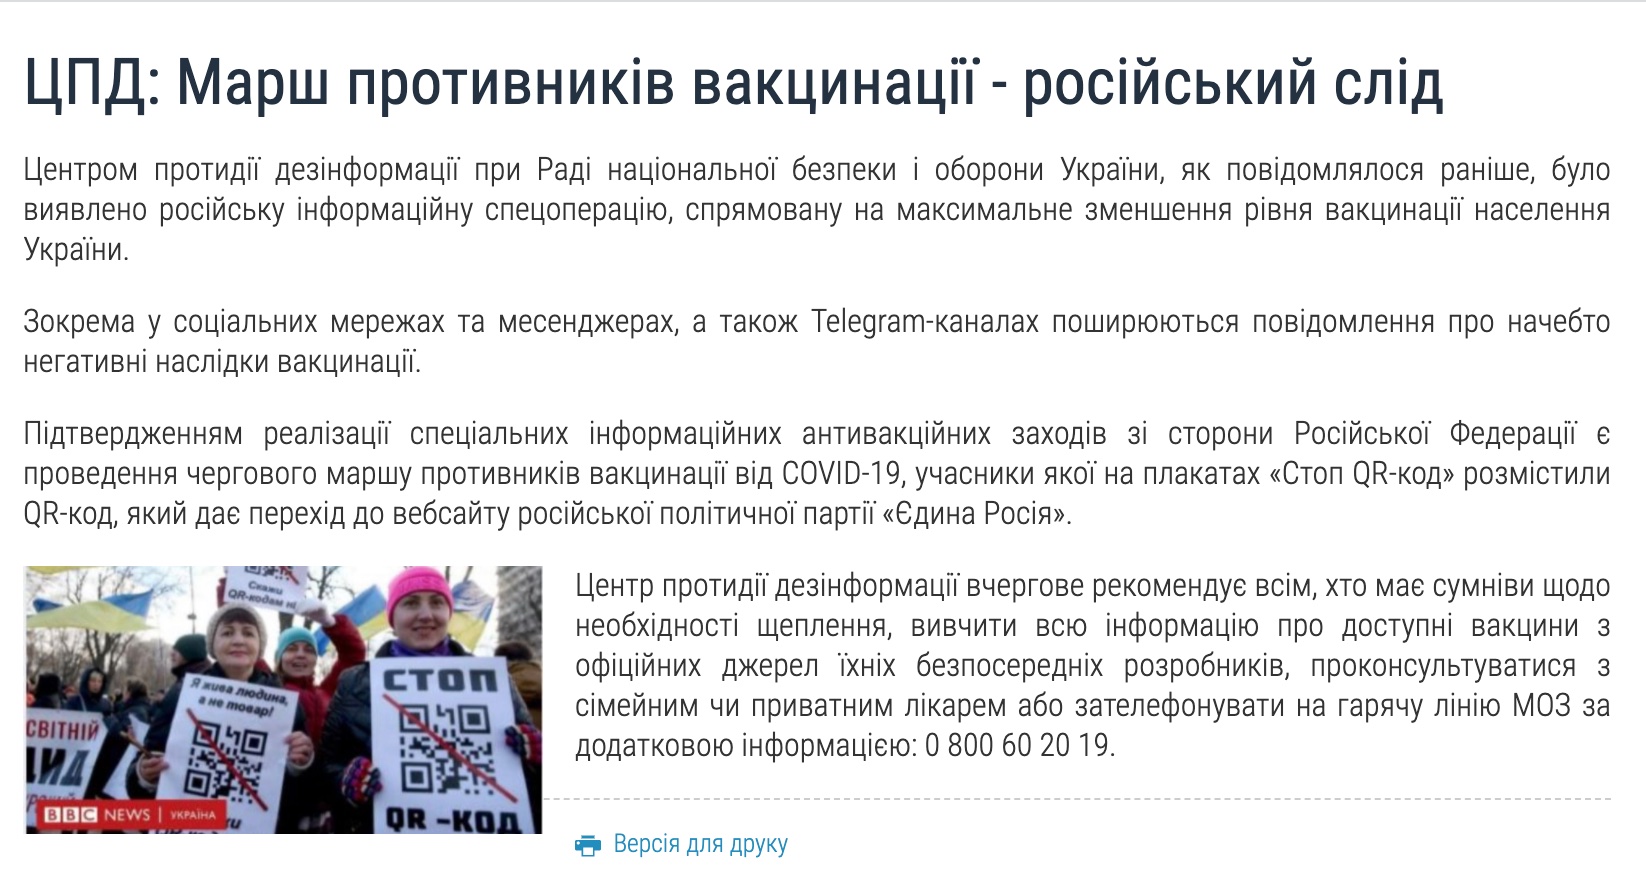 Антивакцинаторы принесли на митинг плакаты с QR-кодом, ведущим на сайт Единой России: фото